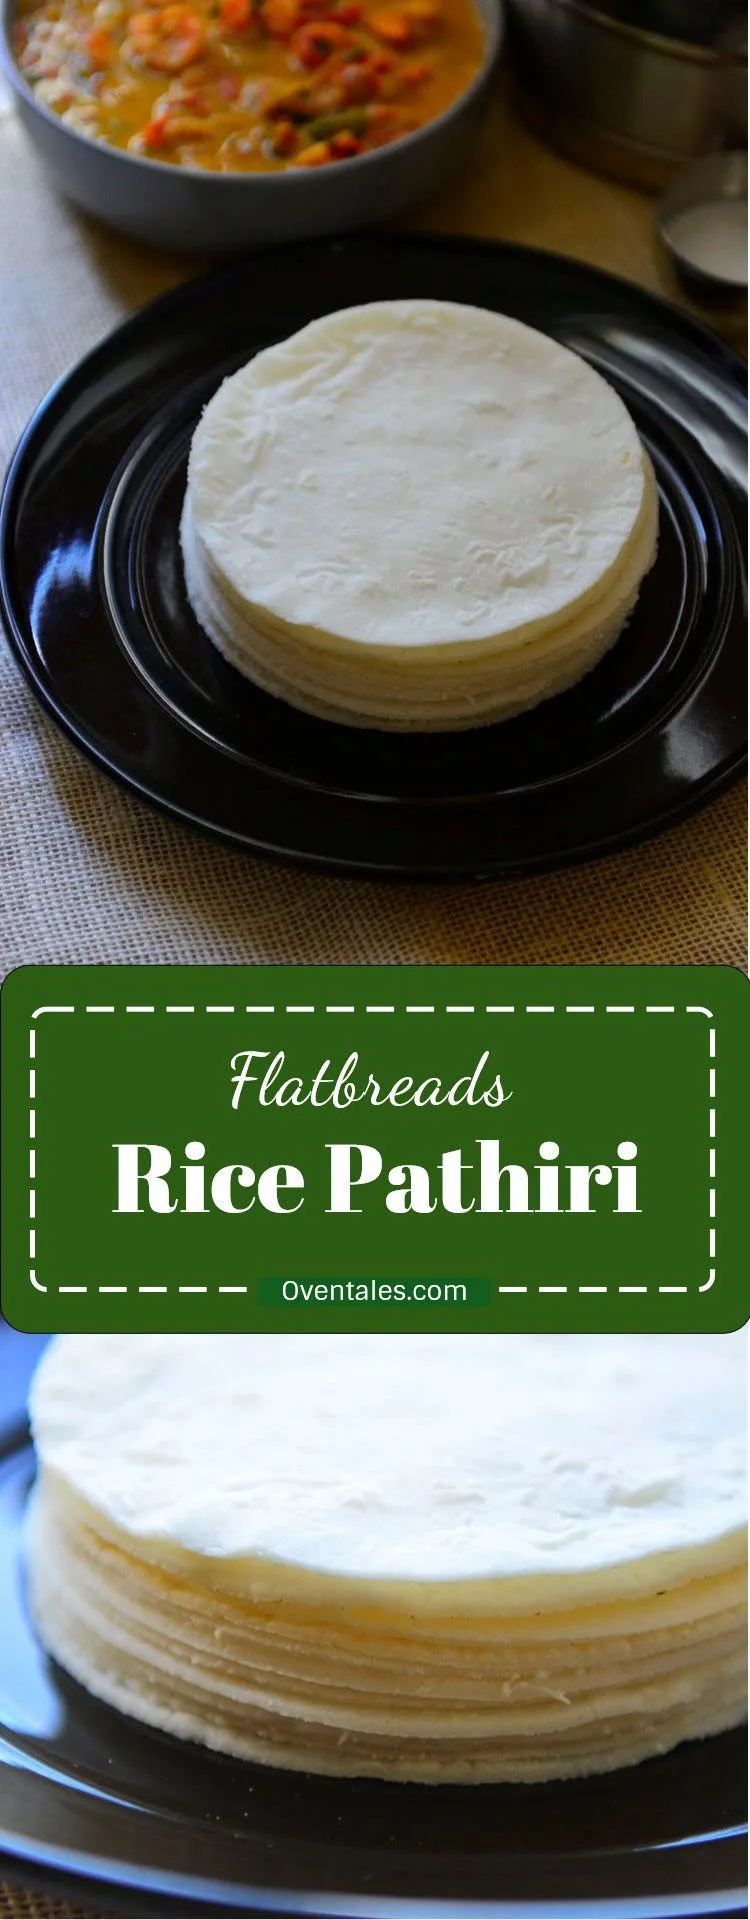 Rice Pathiri